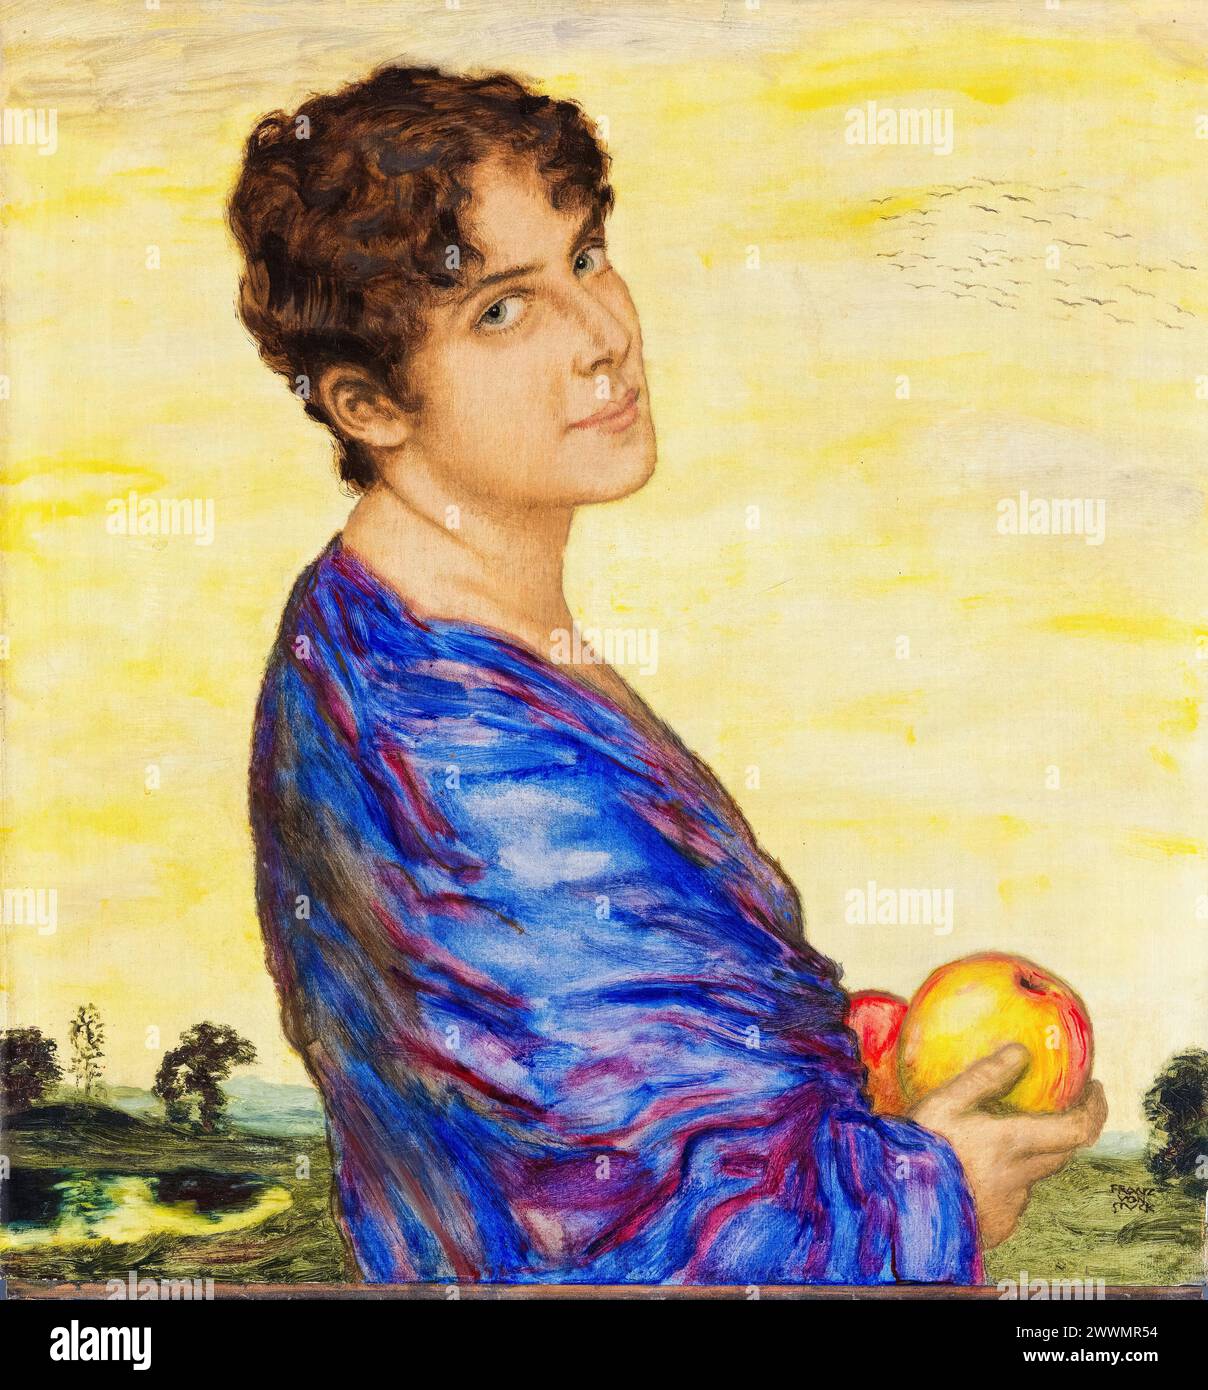 Mary Stuck (Mary Lindpaint, 1865-1929), épouse de l’artiste, portrait peint à l’huile sur bois par Franz von Stuck, vers 1914 Banque D'Images